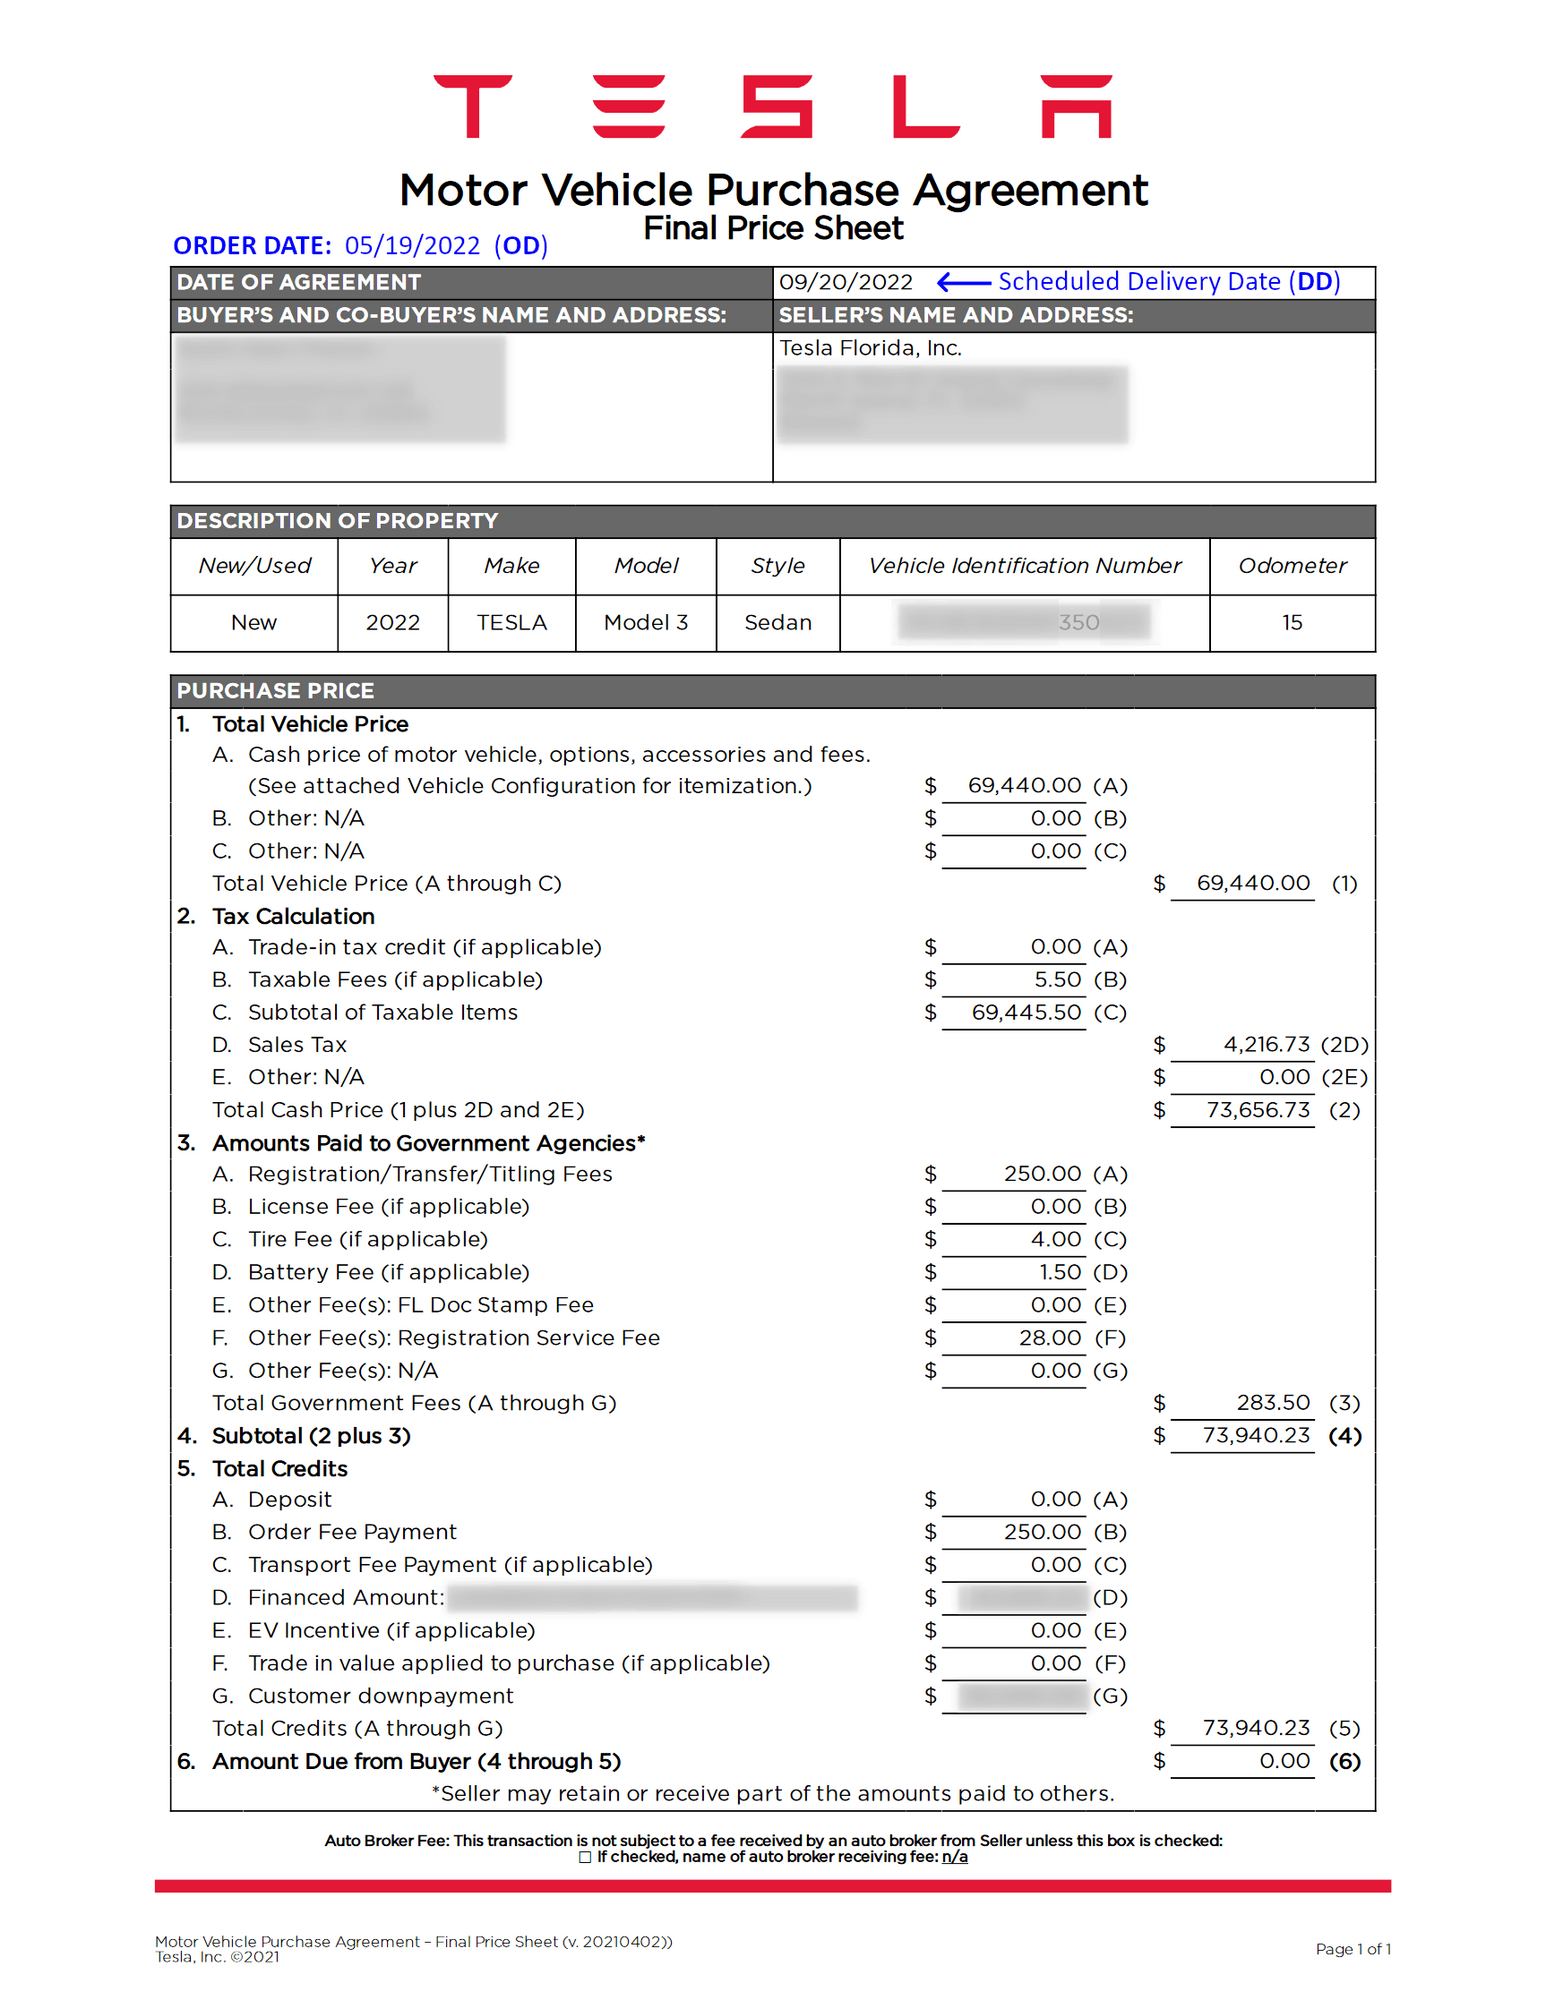 2022 0907 MVPA final price sheet 0 redacted.png